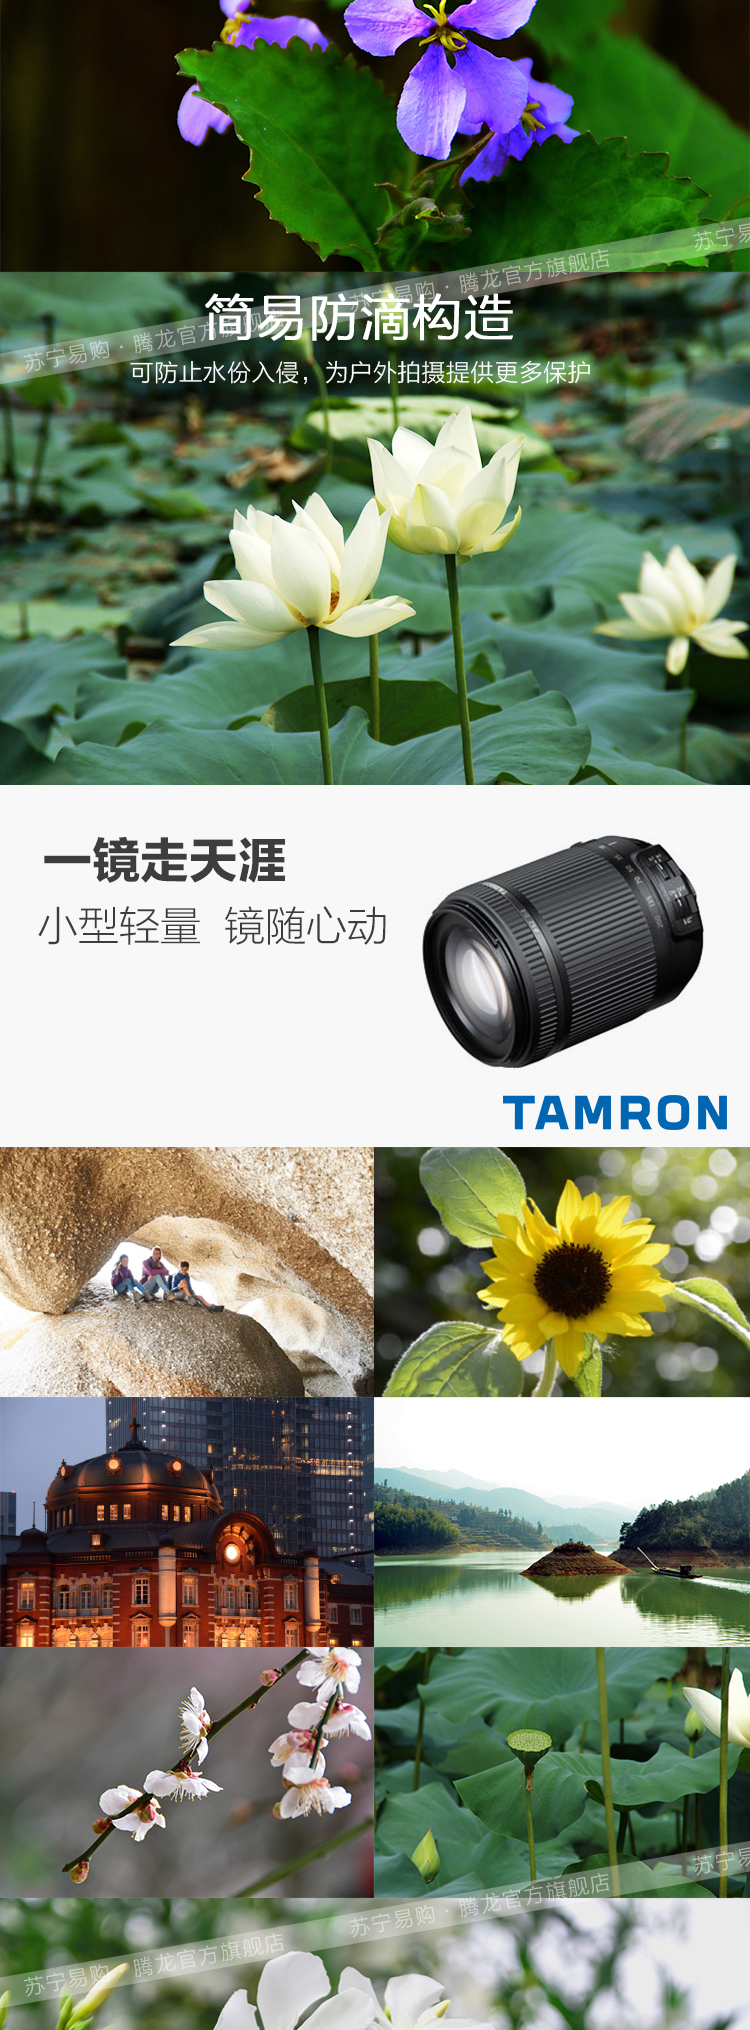 腾龙(TAMRON) 18-200mm F/3.5-6.3 Di II VC Model B018 尼康卡口